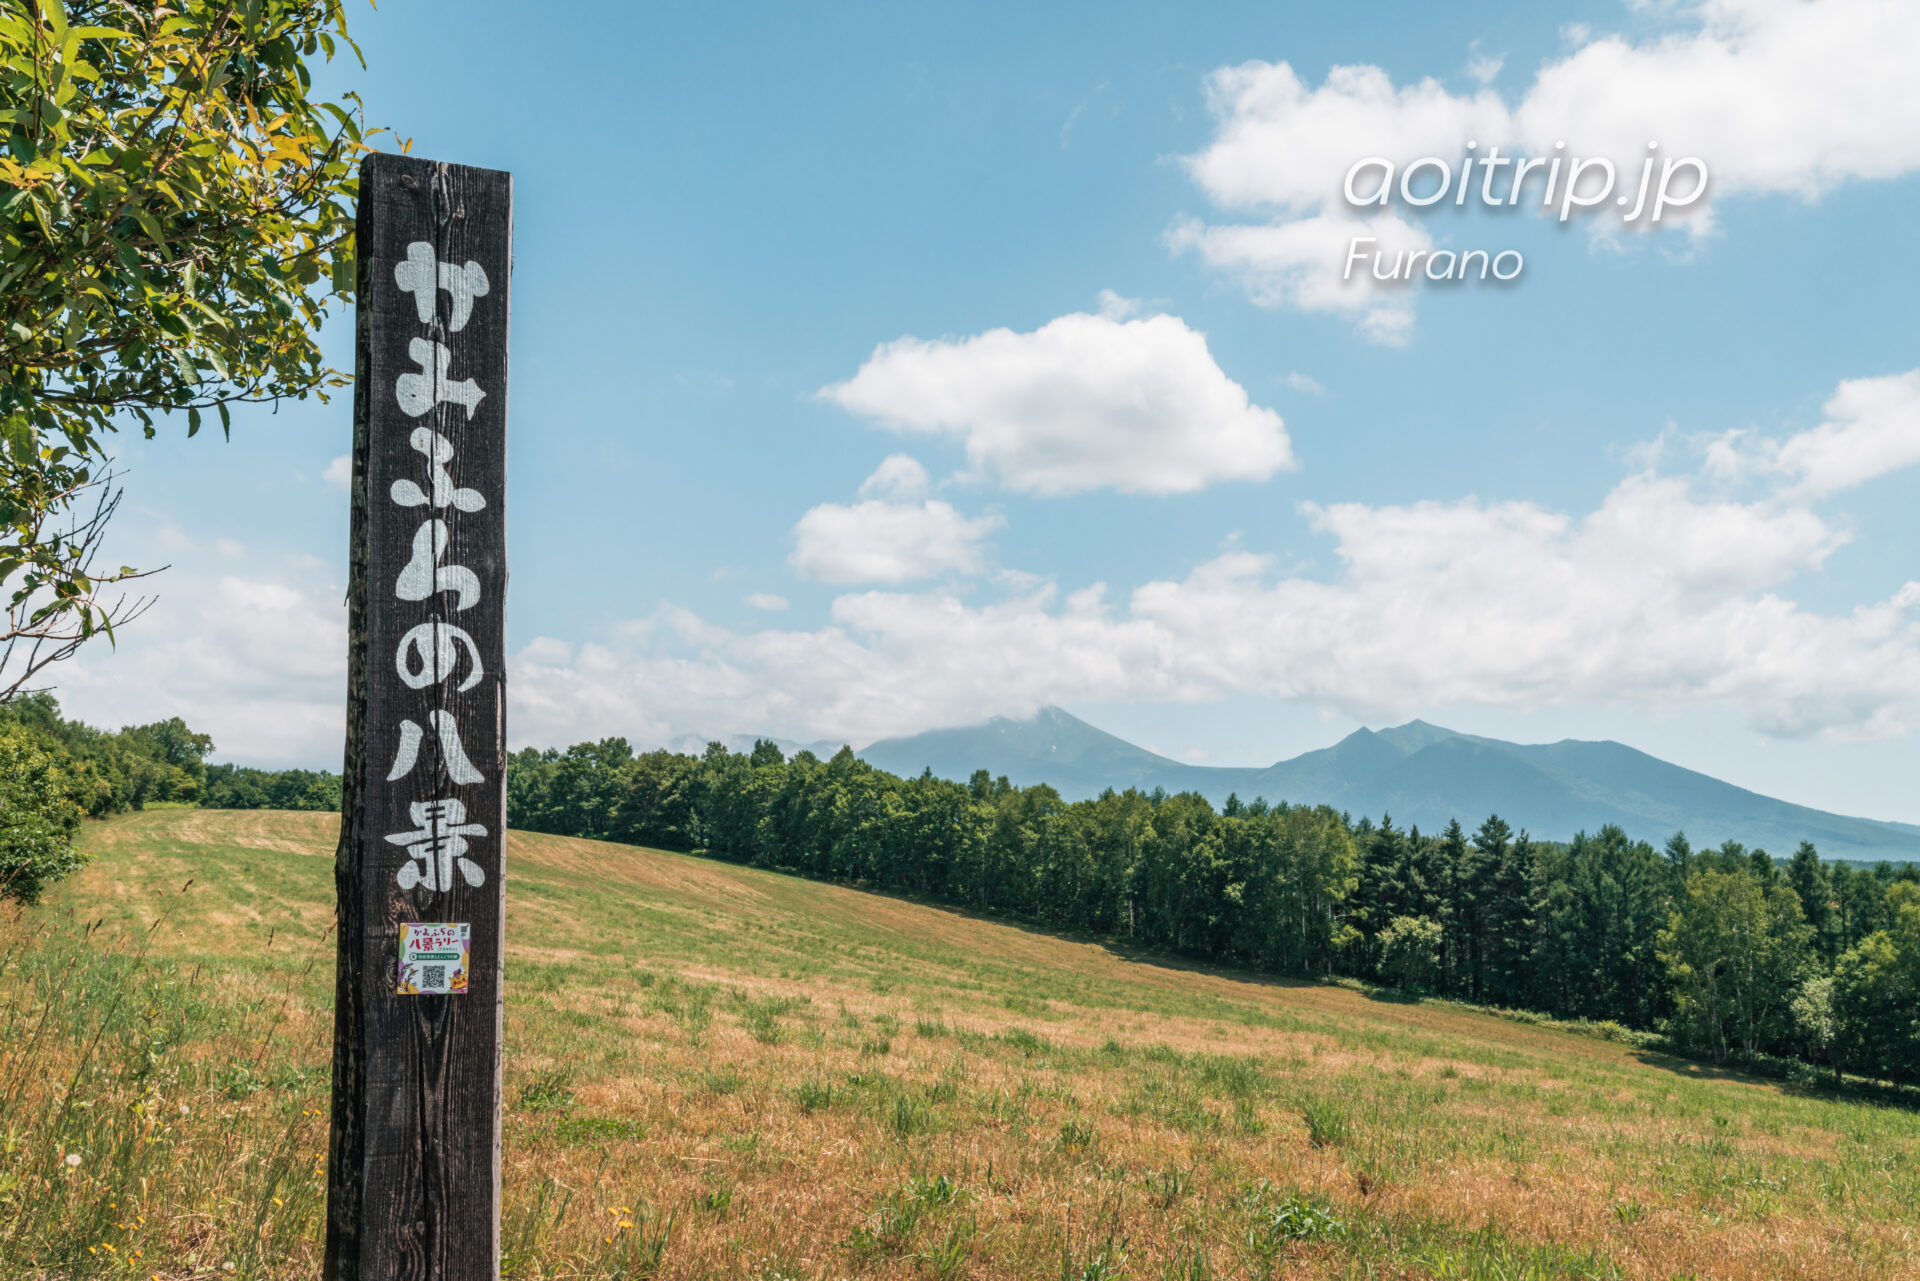 和田草原とどんぐりの郷 Wada Grassland & Acorn Village, Kamifurano